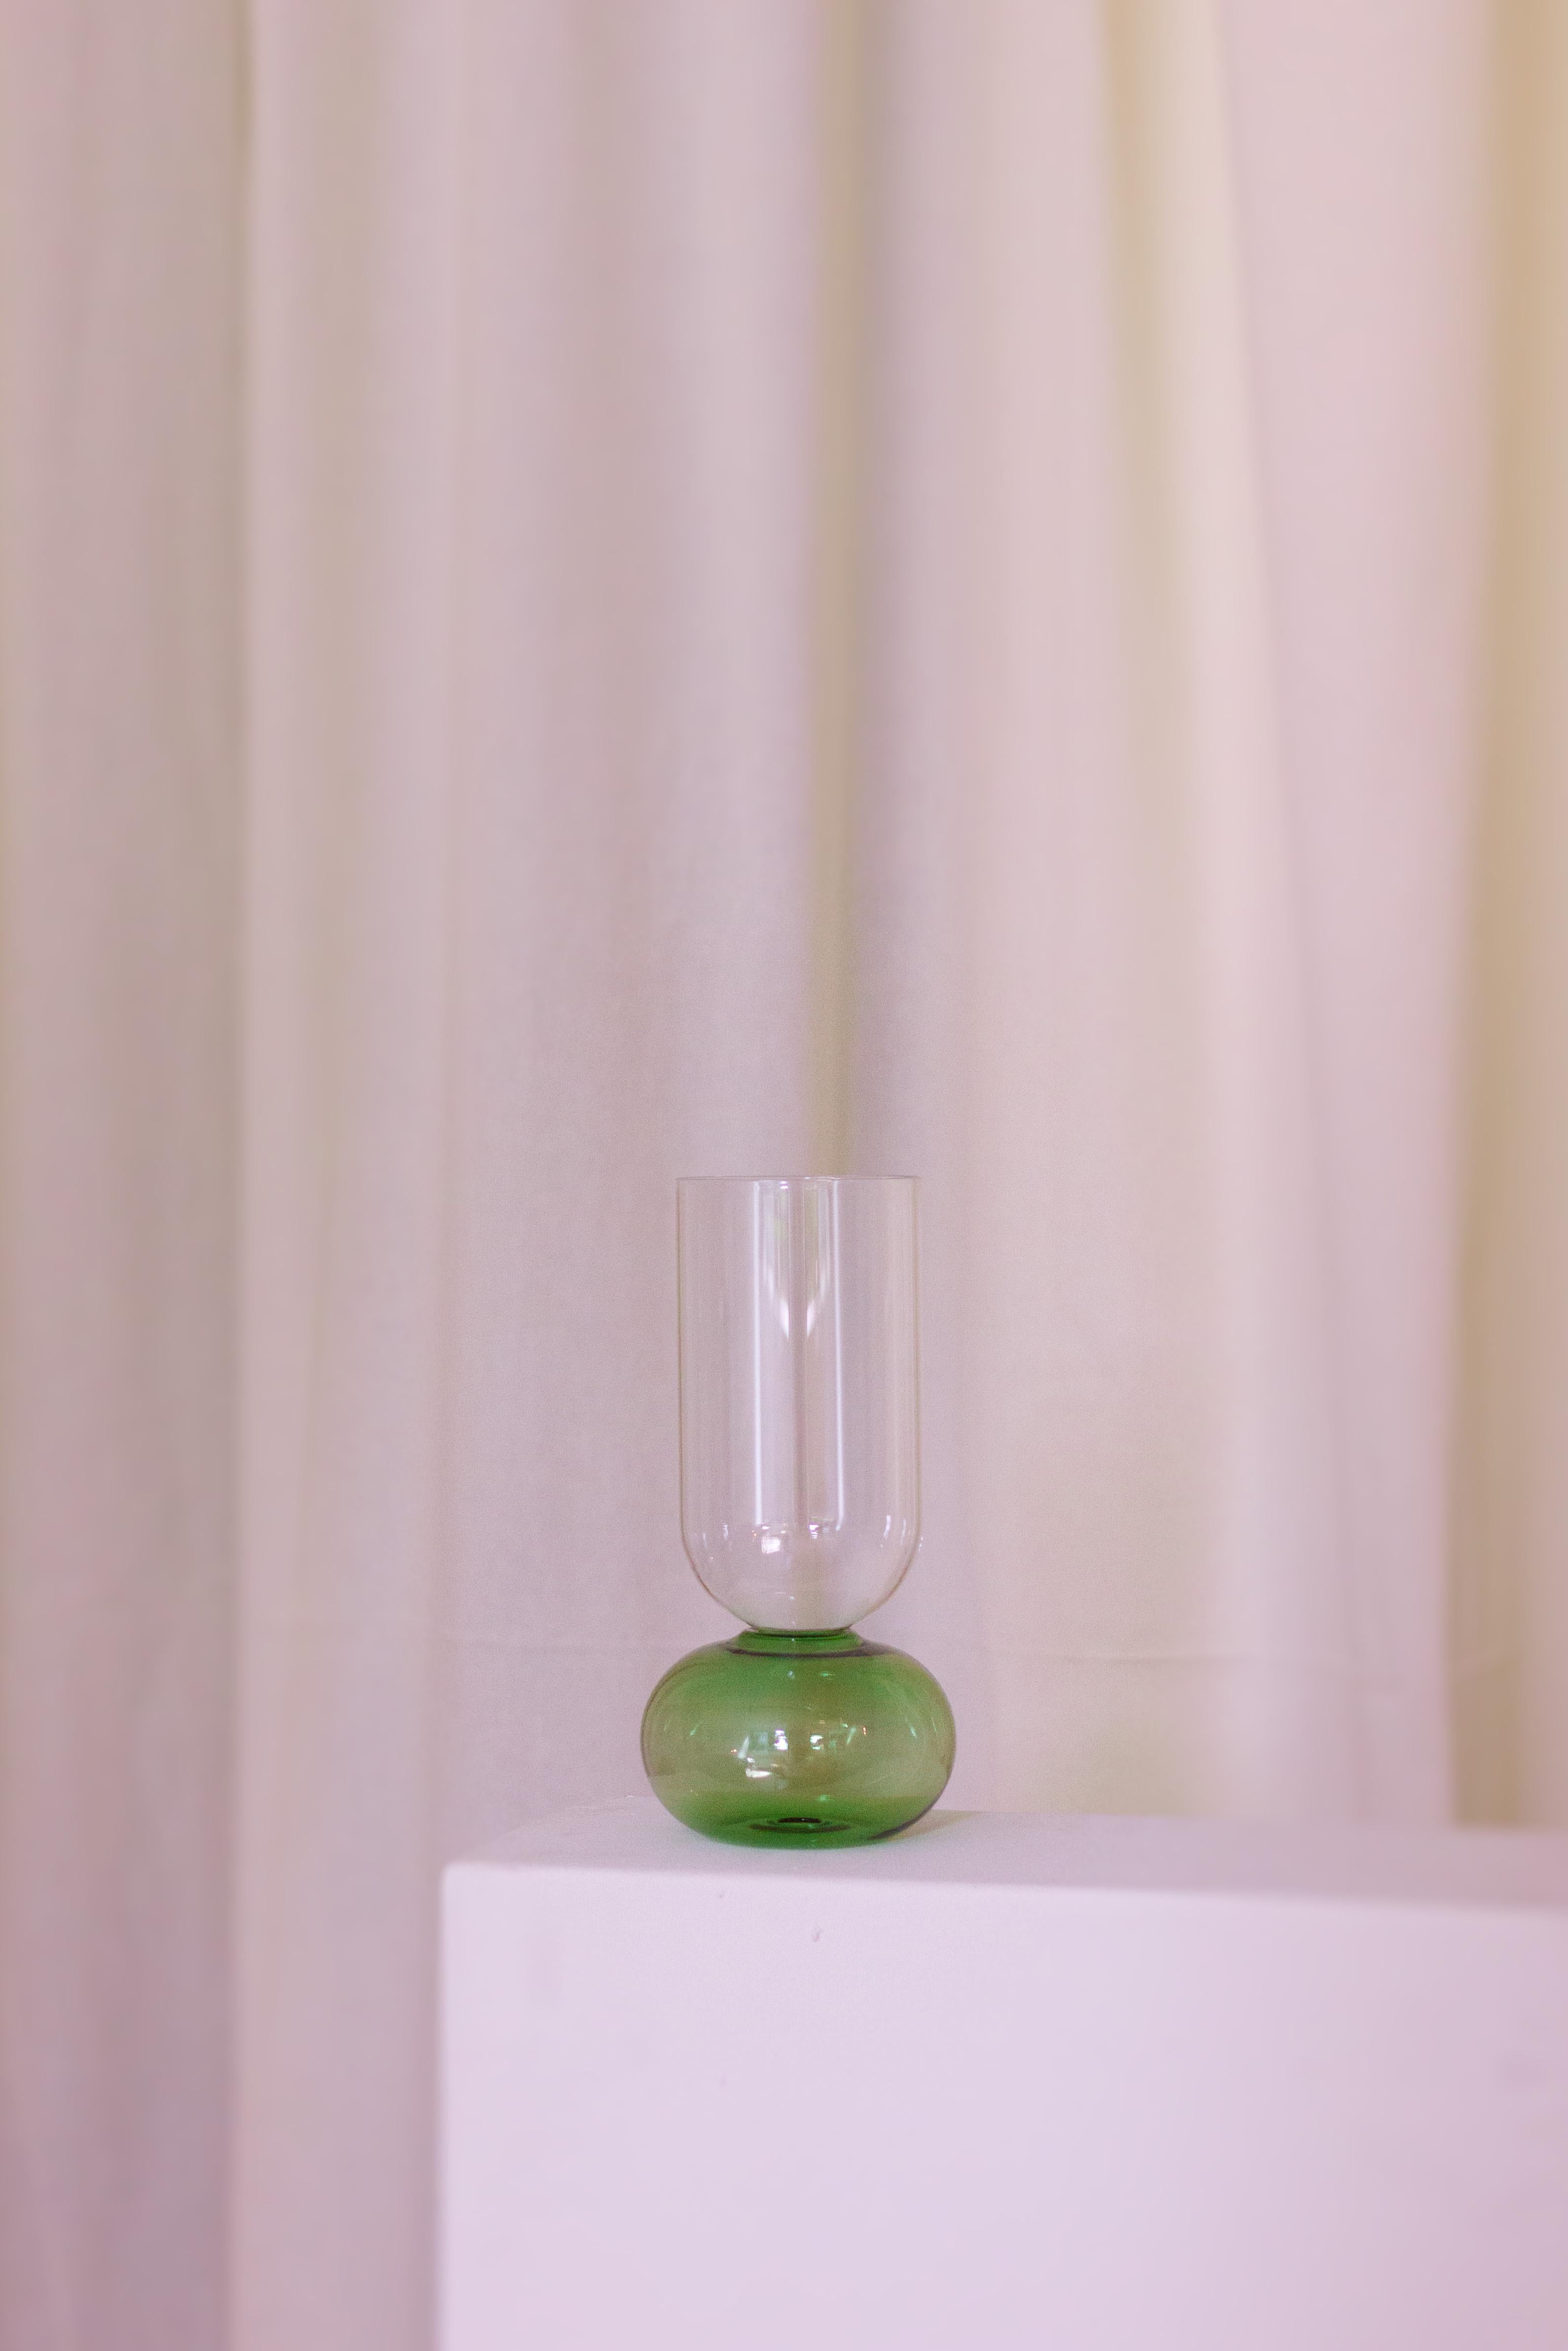 Diese bezaubernde, handgefertigte Vase aus feinem Kristall ist ein Schaufenster der reinen Volumen. Ihre elegante Silhouette besteht aus einem kugelförmigen, blauen Sockel, der den zylindrischen, klaren Körper trägt. Nach traditionellen Techniken